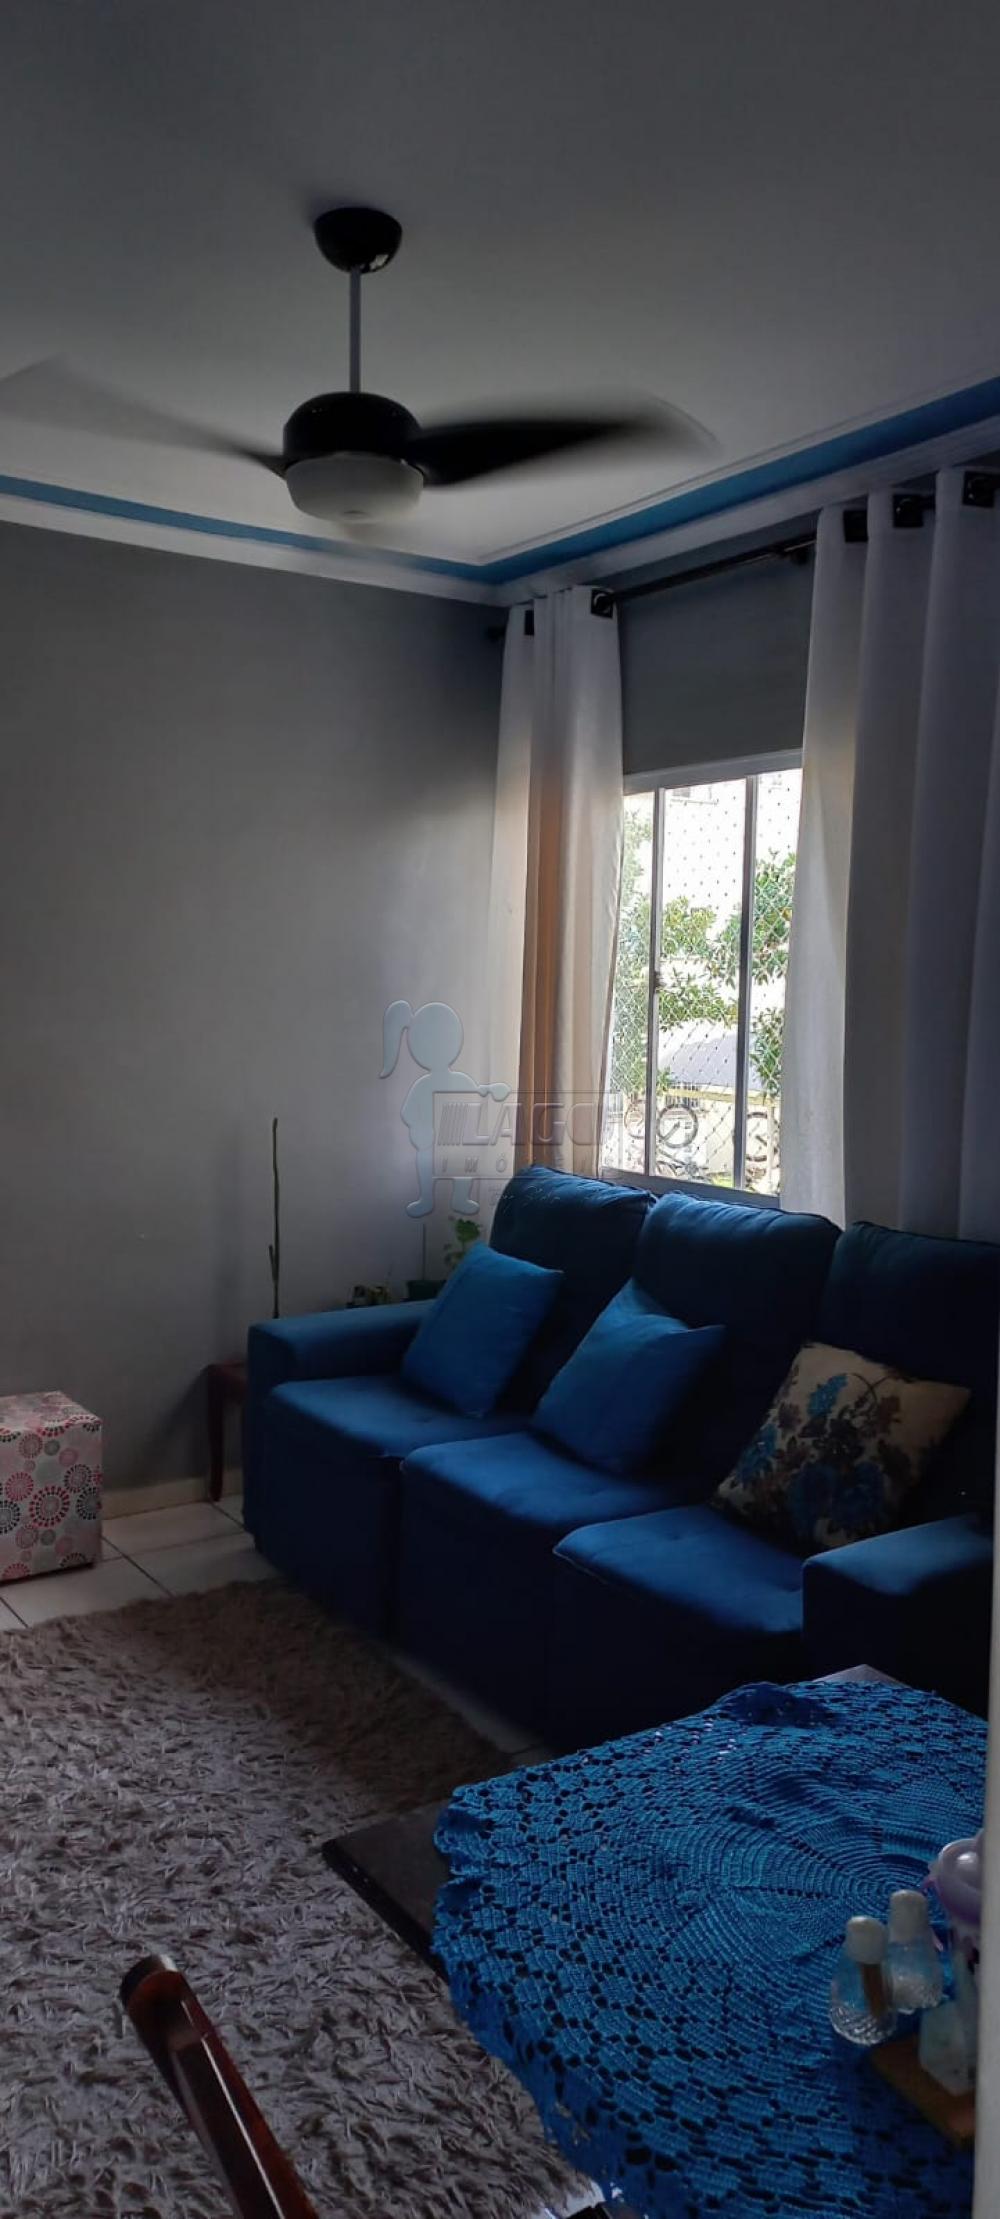 Comprar Apartamento / Padrão em Ribeirão Preto R$ 120.000,00 - Foto 2